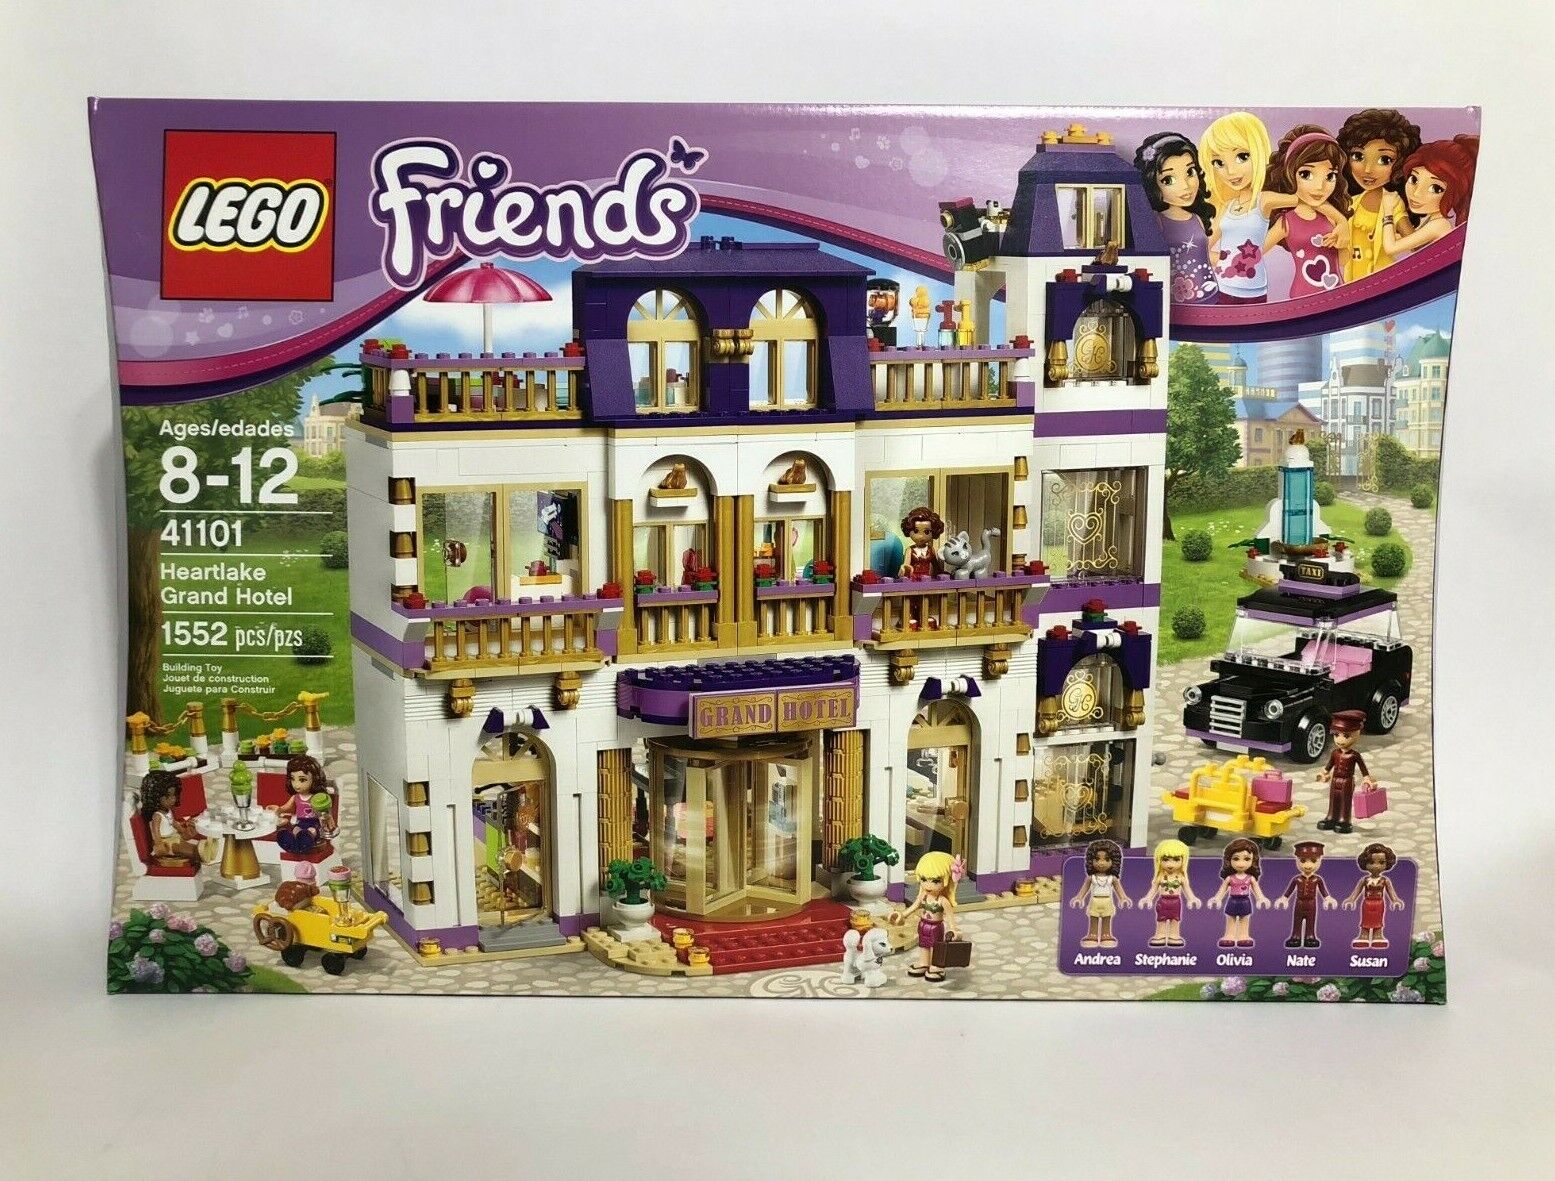 Goed min test LEGO Friends 41101 Heartlake Grand Hotel - NEW - SEALED - RETIRED - SHELF  WEAR | eBay